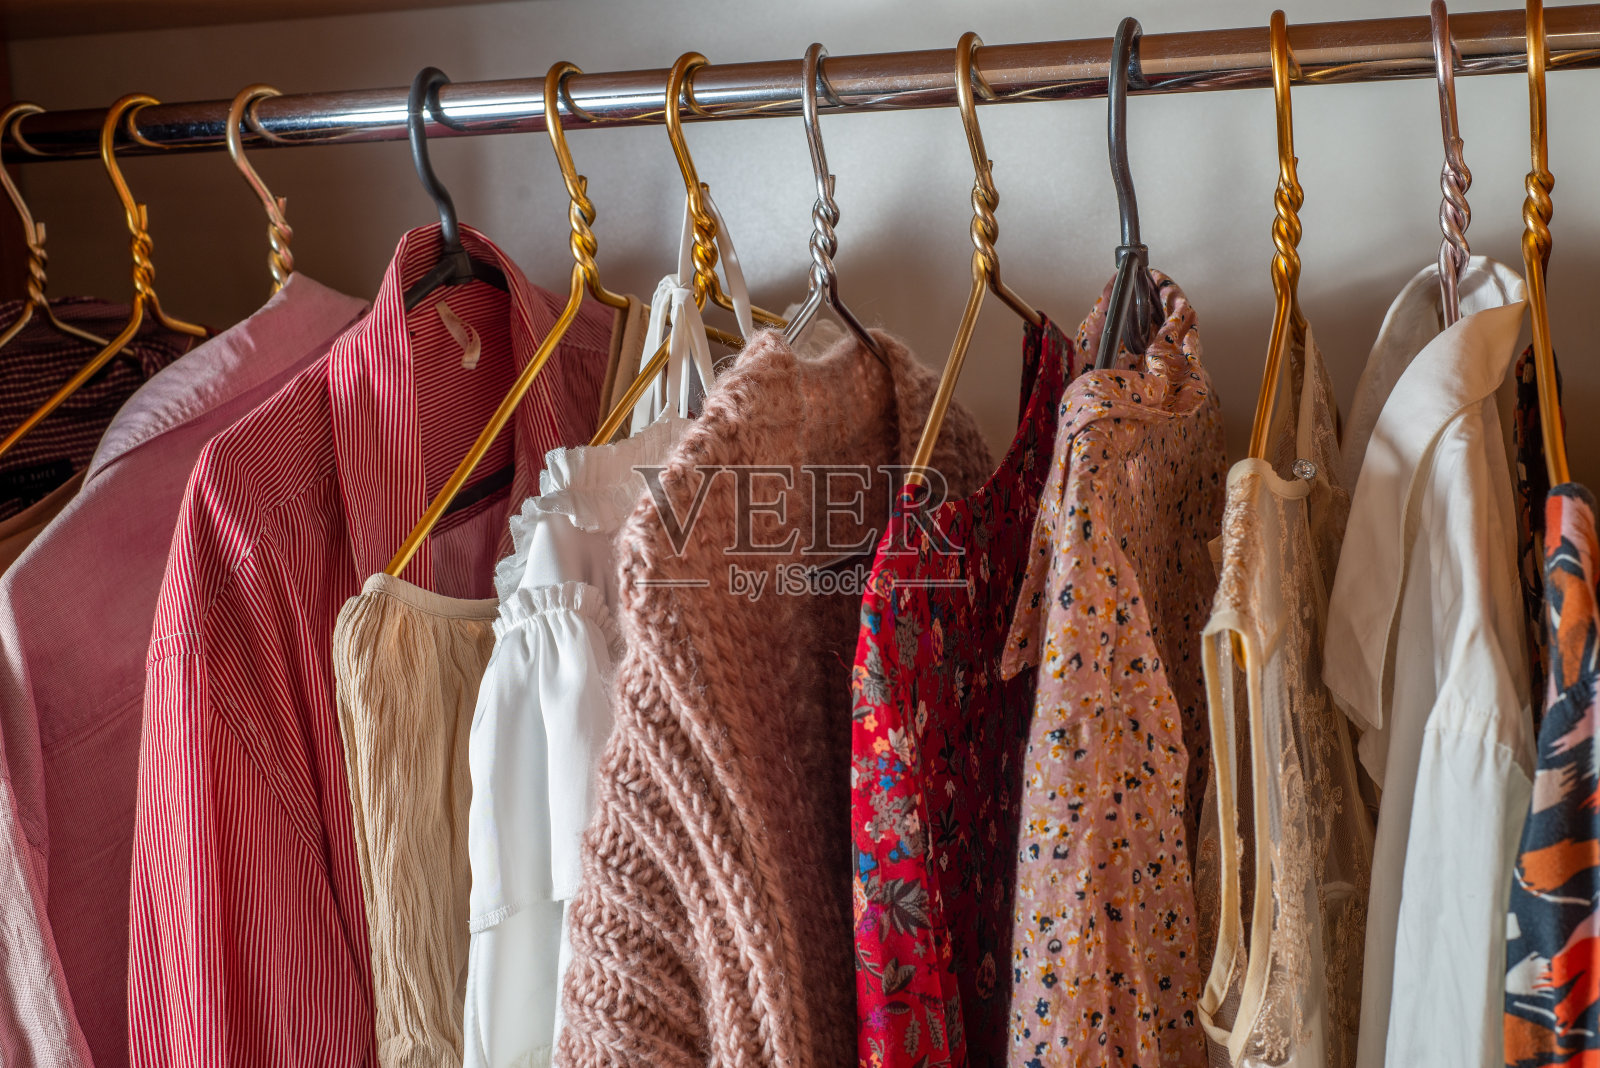 粉色的衣柜。衣柜里的衣架上挂着许多精致轻薄的夏装。
清理房间照片摄影图片